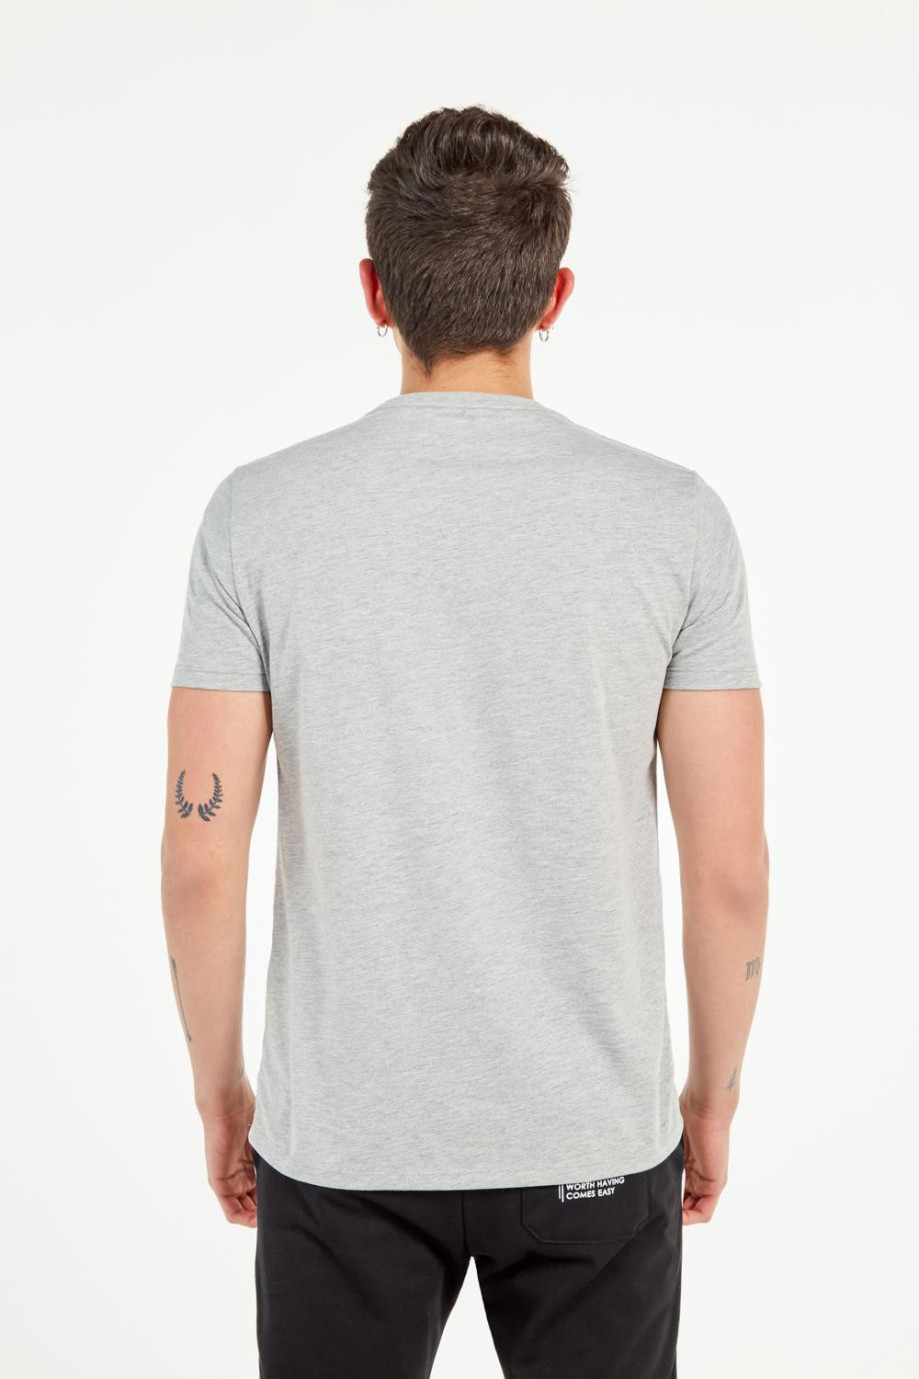 Camiseta gris clara cuello redondo con bolsillo en el pecho